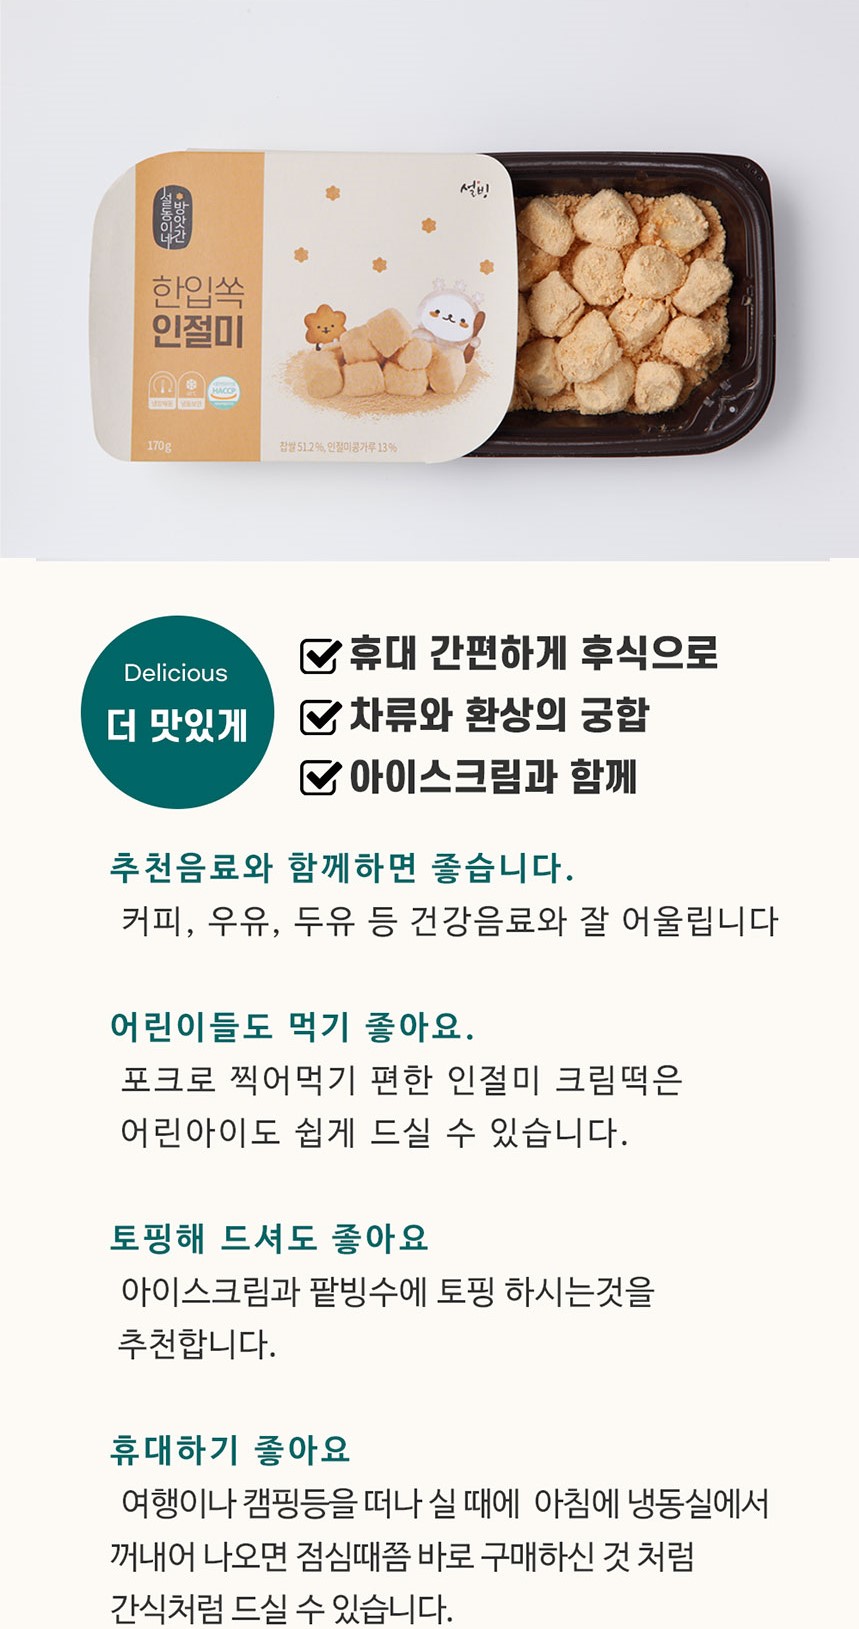 韓國食品-[설빙] 빙수 한입쏙 인절미 170g